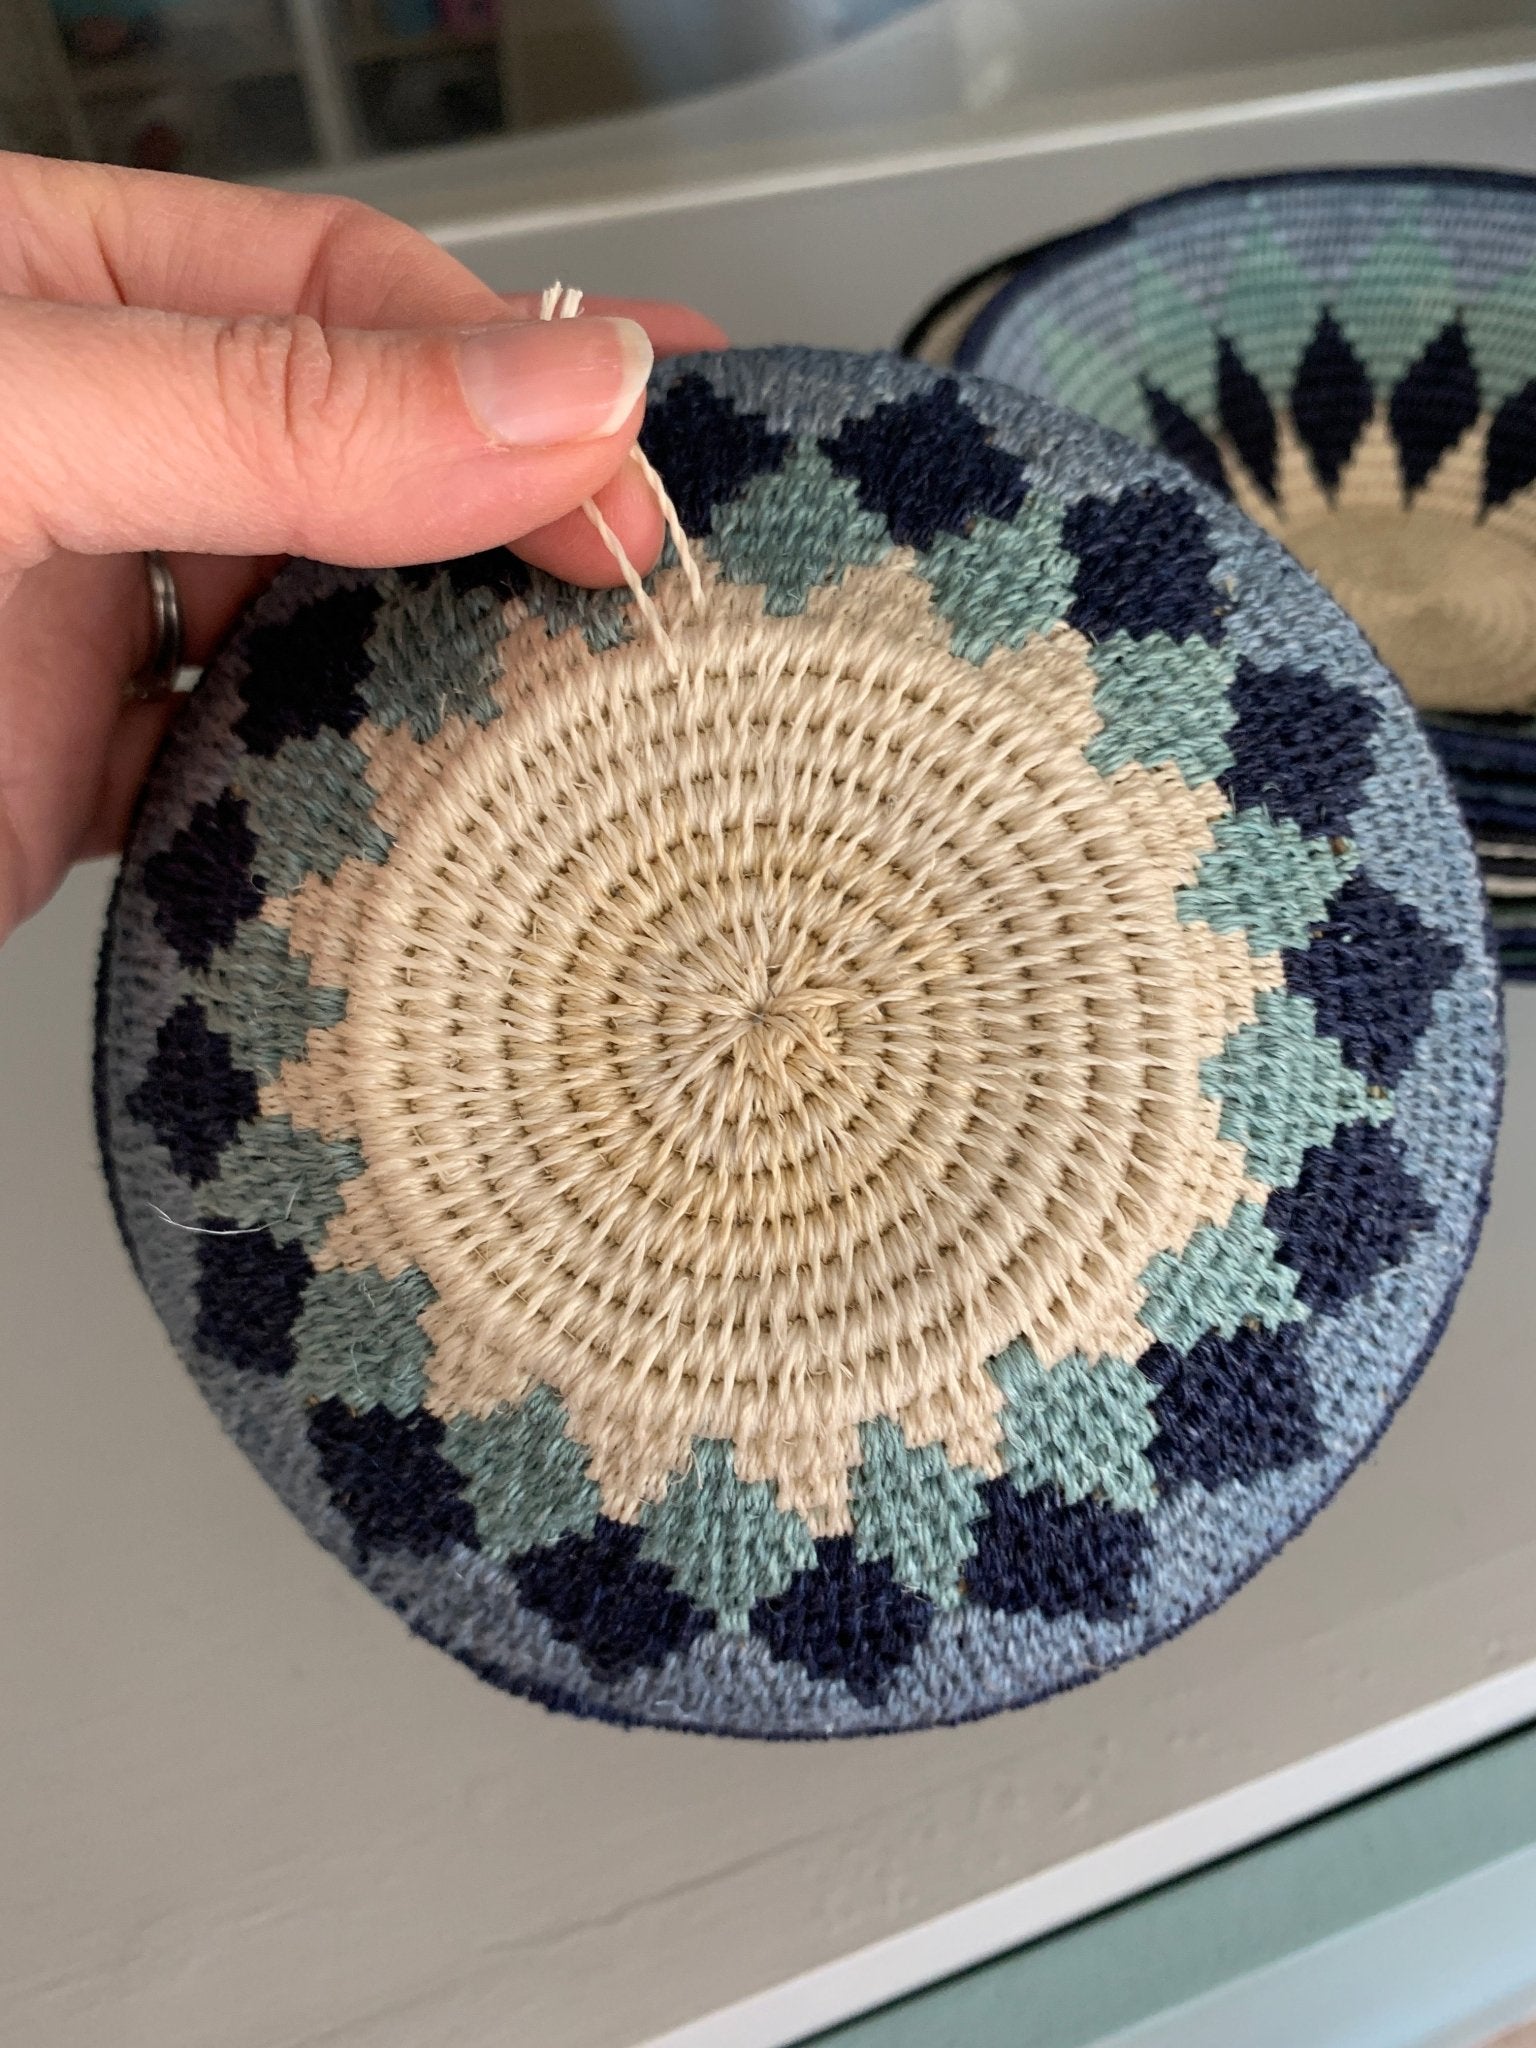 Hand woven sisal basket plate - sunburst blue - Natalia Willmott